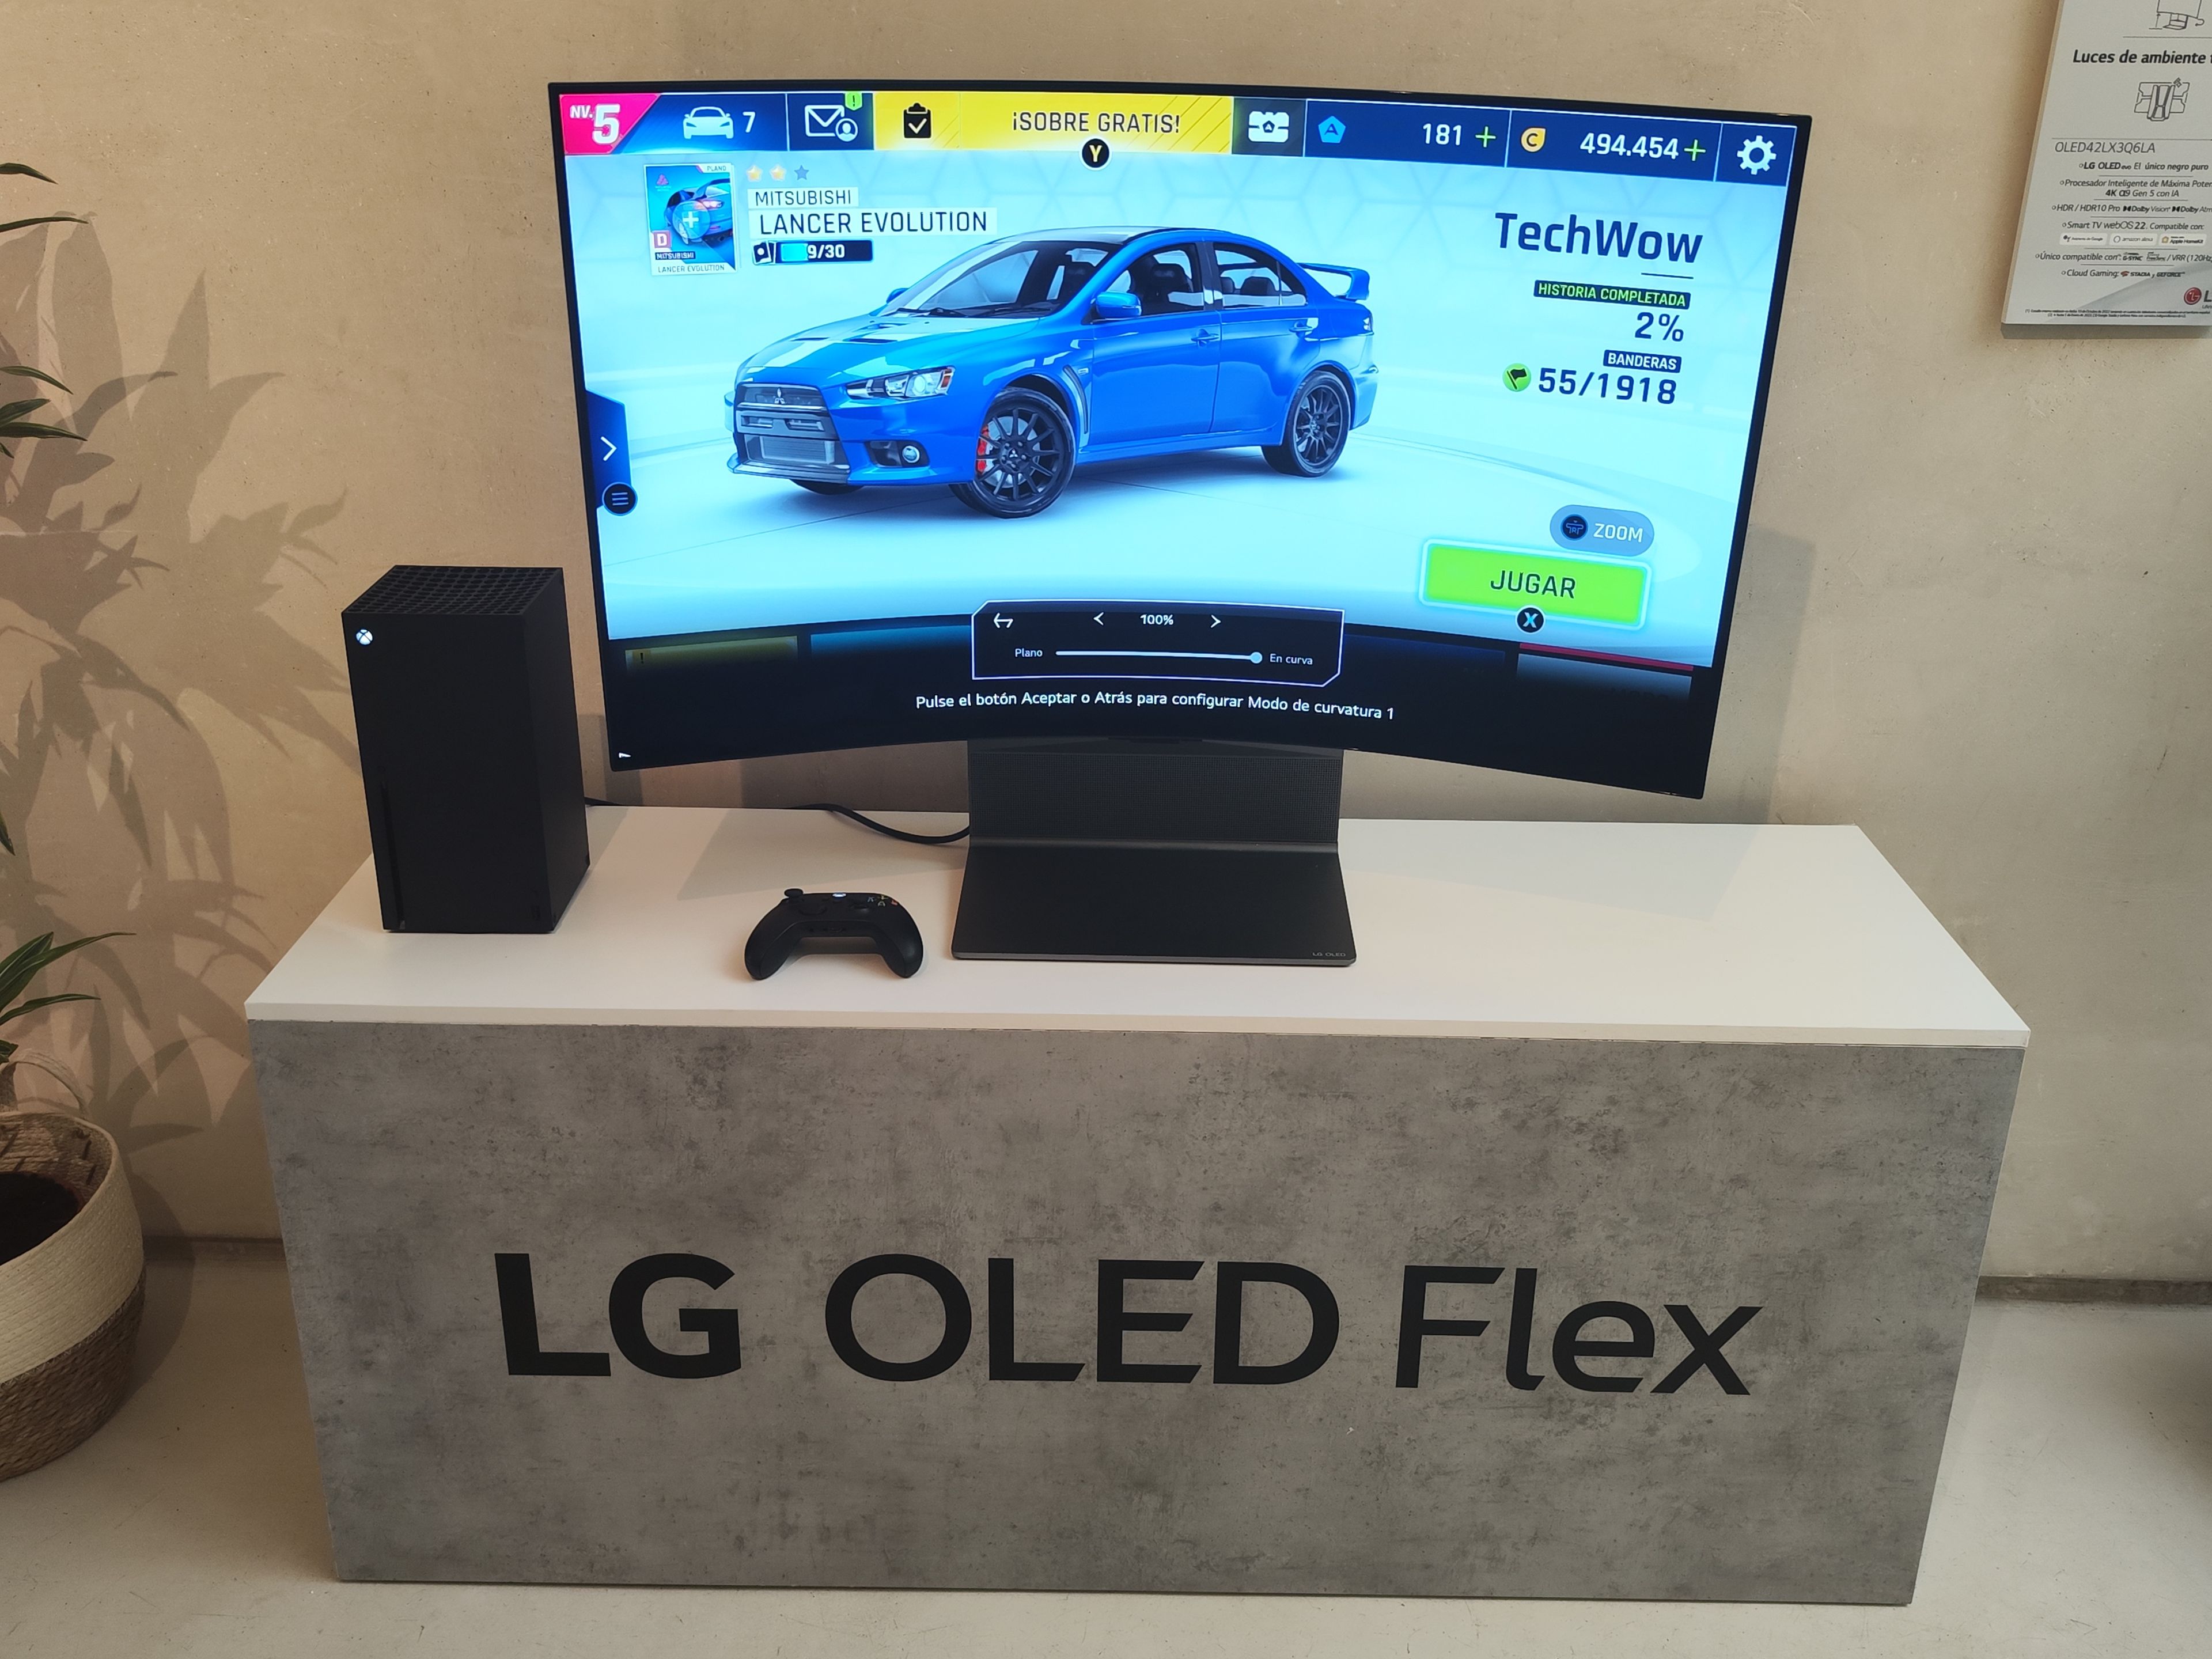 LG OLED Flex.